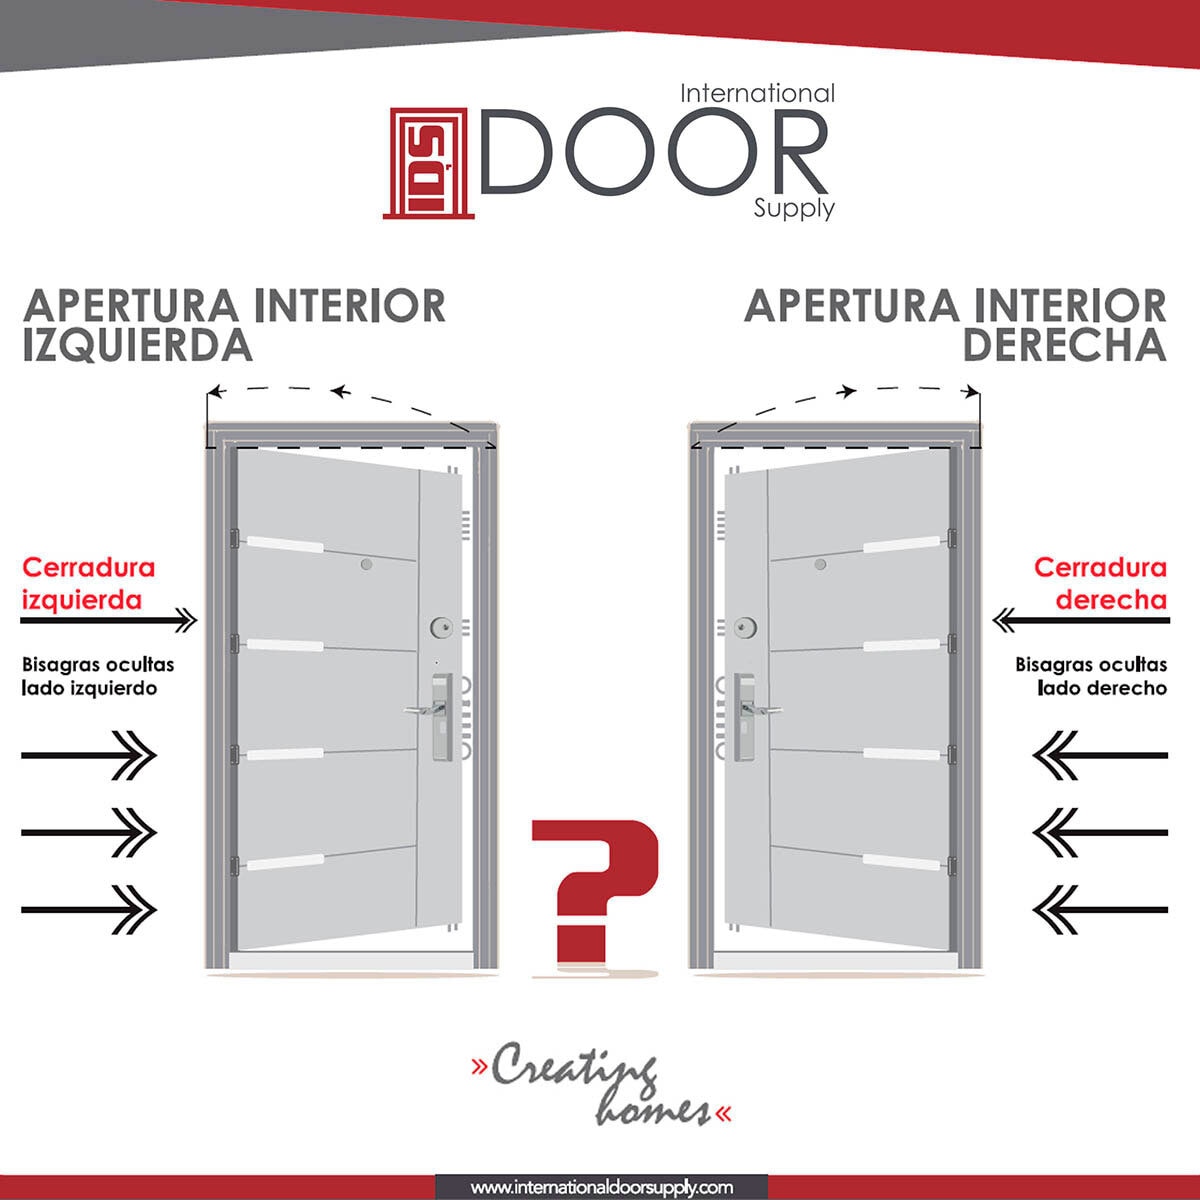 International Door Supply, Puerta De Alta Seguridad Condesa Doble Izquierda